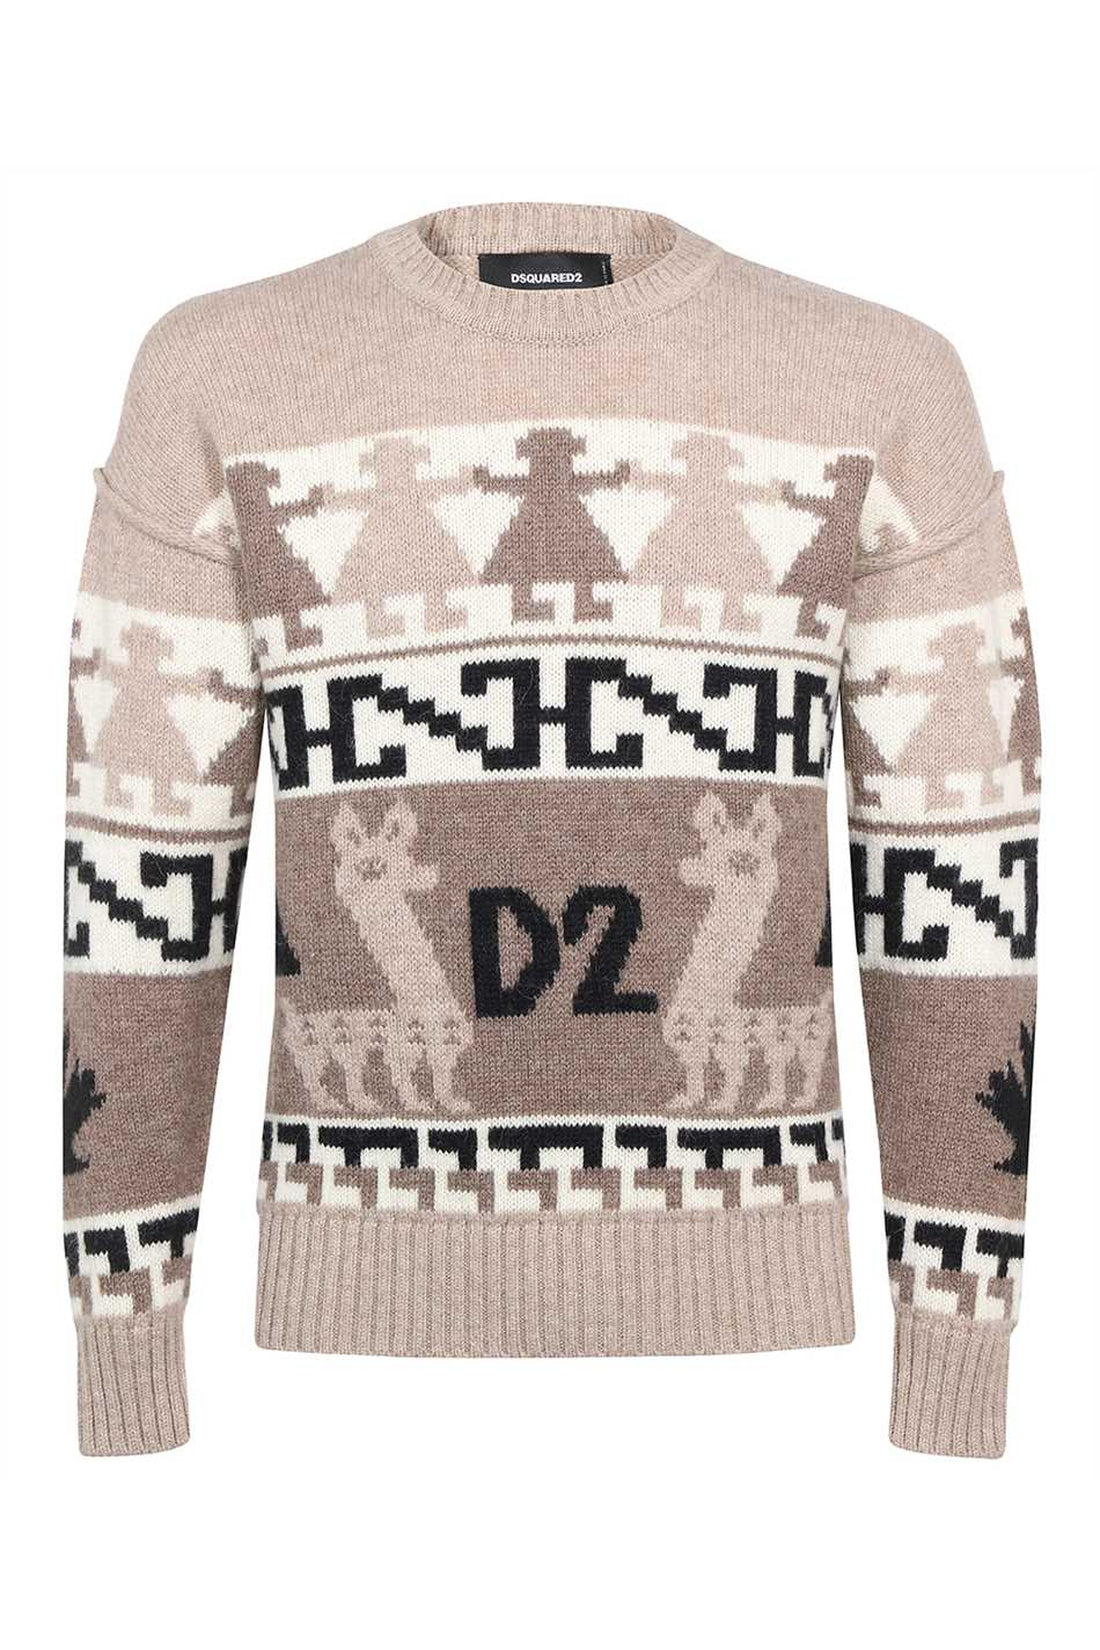 Dsquared2-OUTLET-SALE-Jacquard sweater-ARCHIVIST